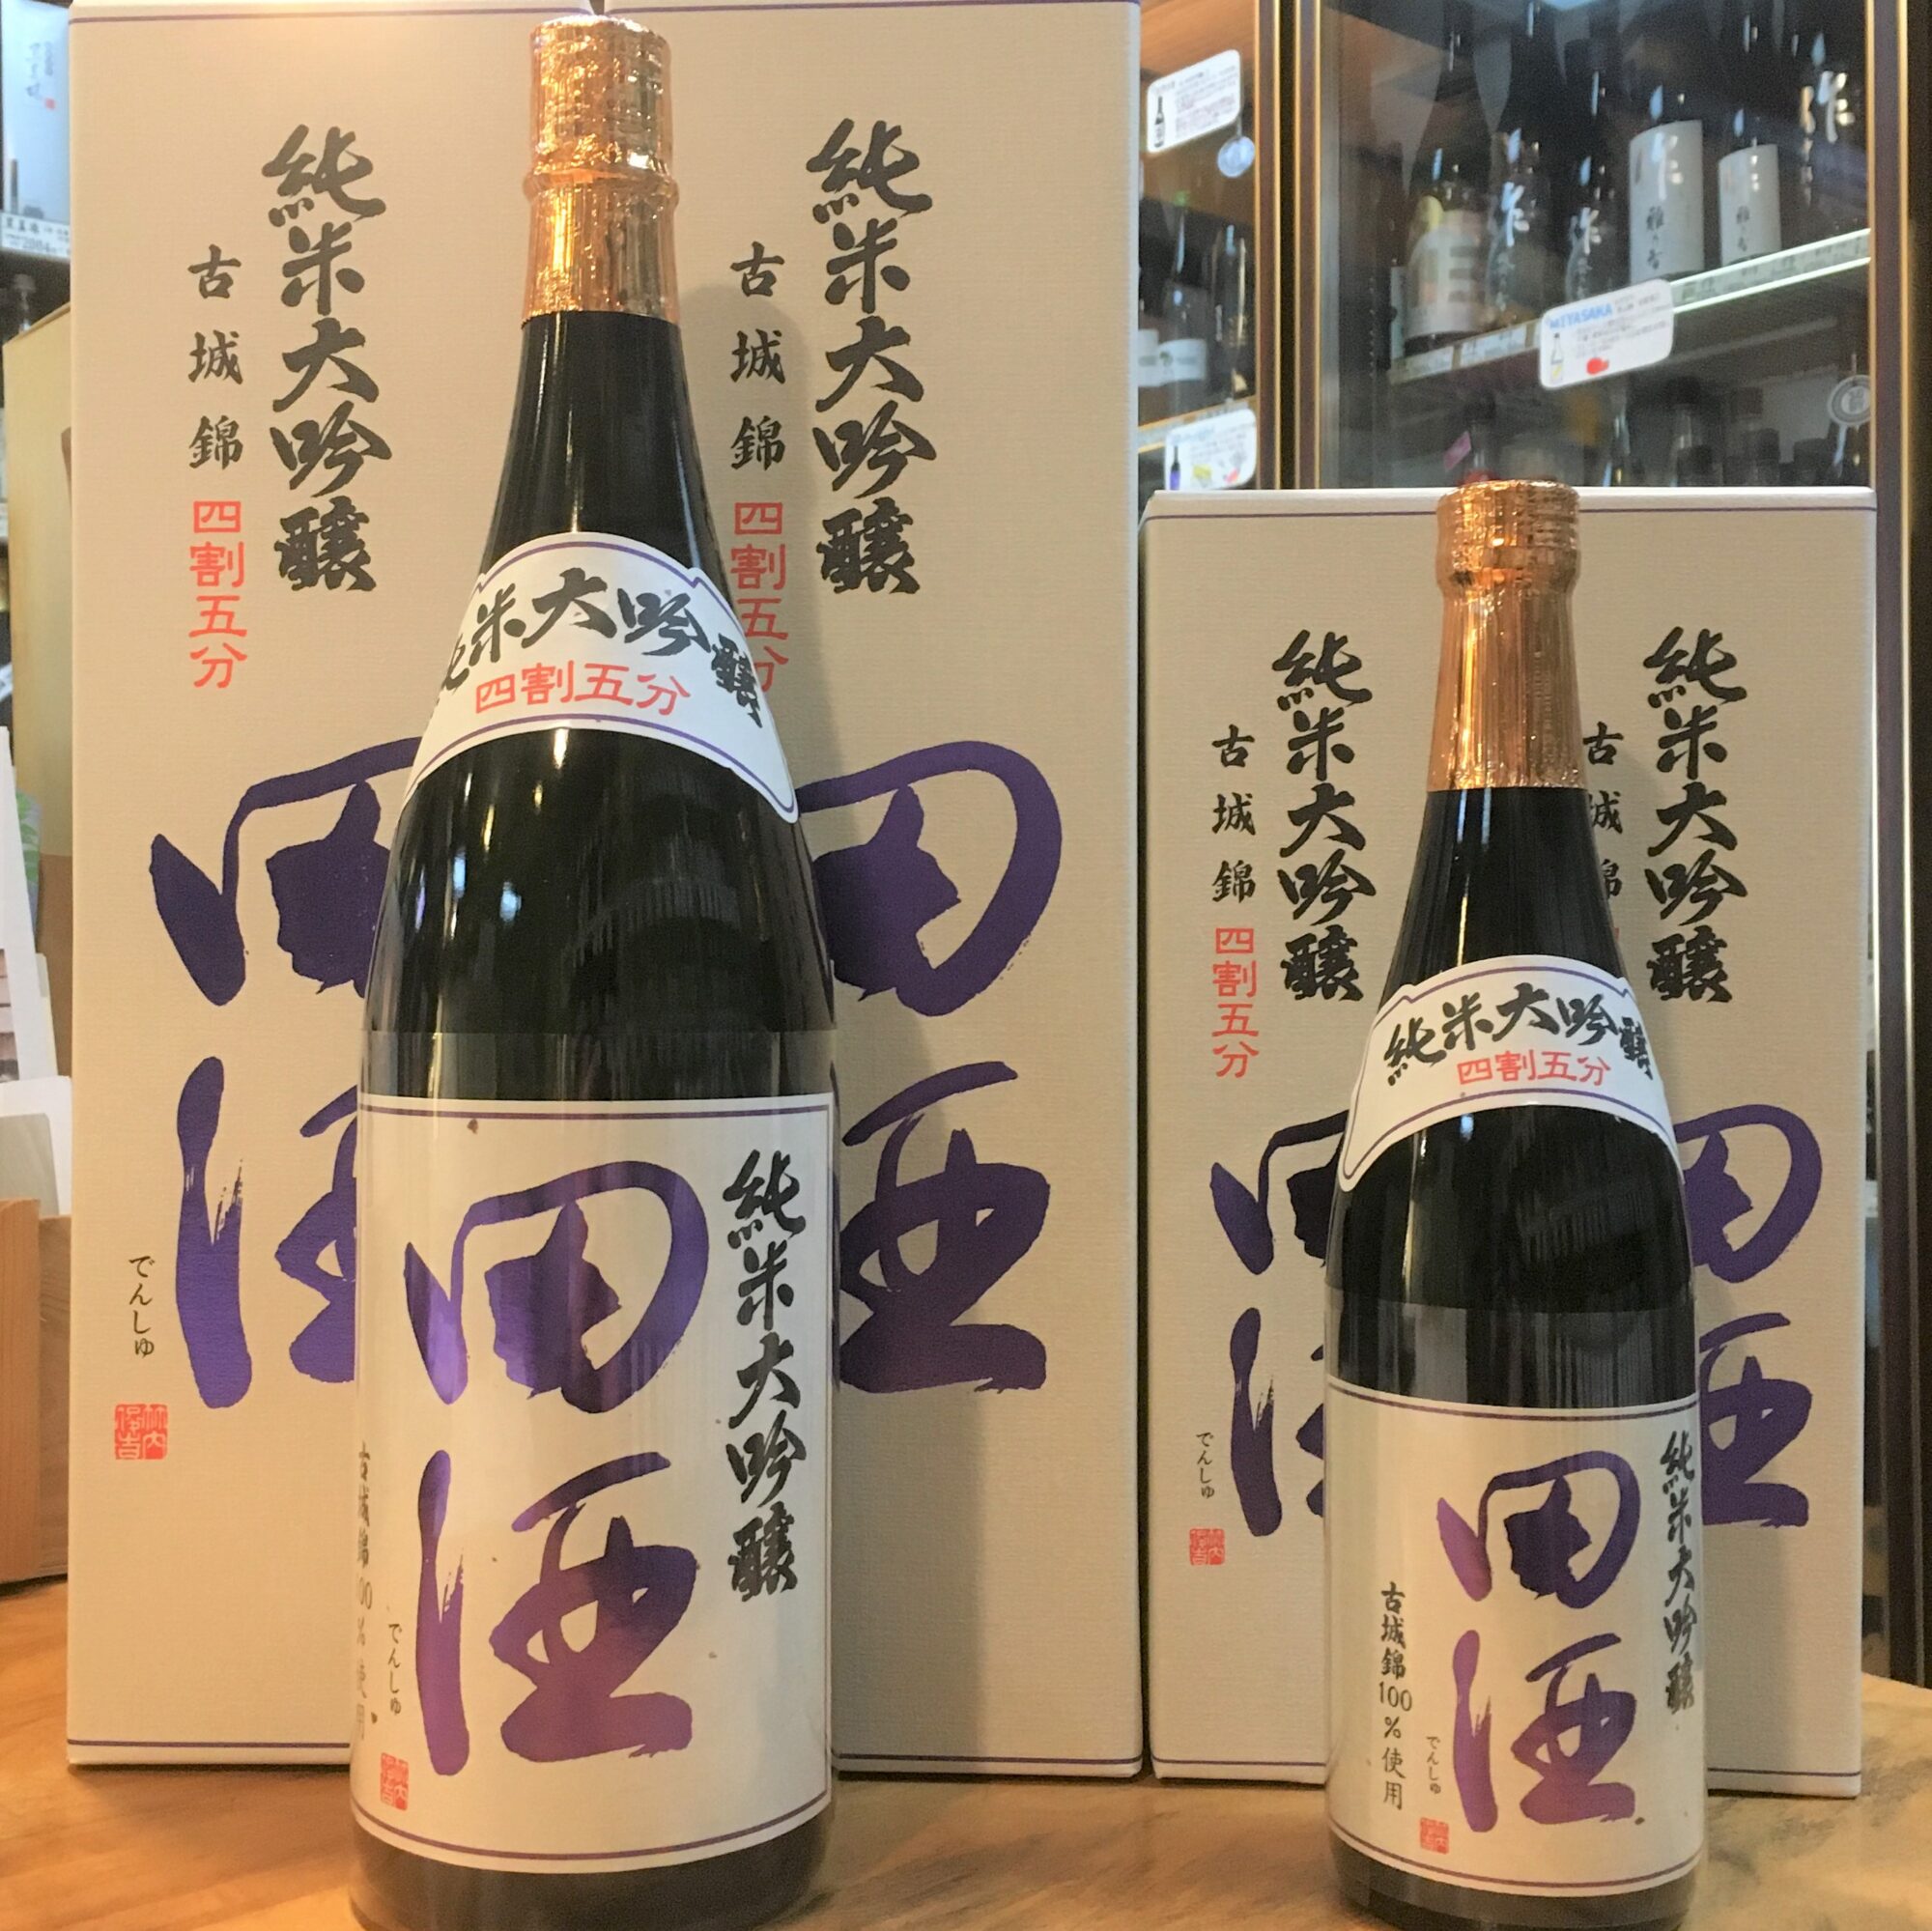 田酒の純米大吟醸 四割五分シリーズ、「古城錦」が新発売です！ | 若松 